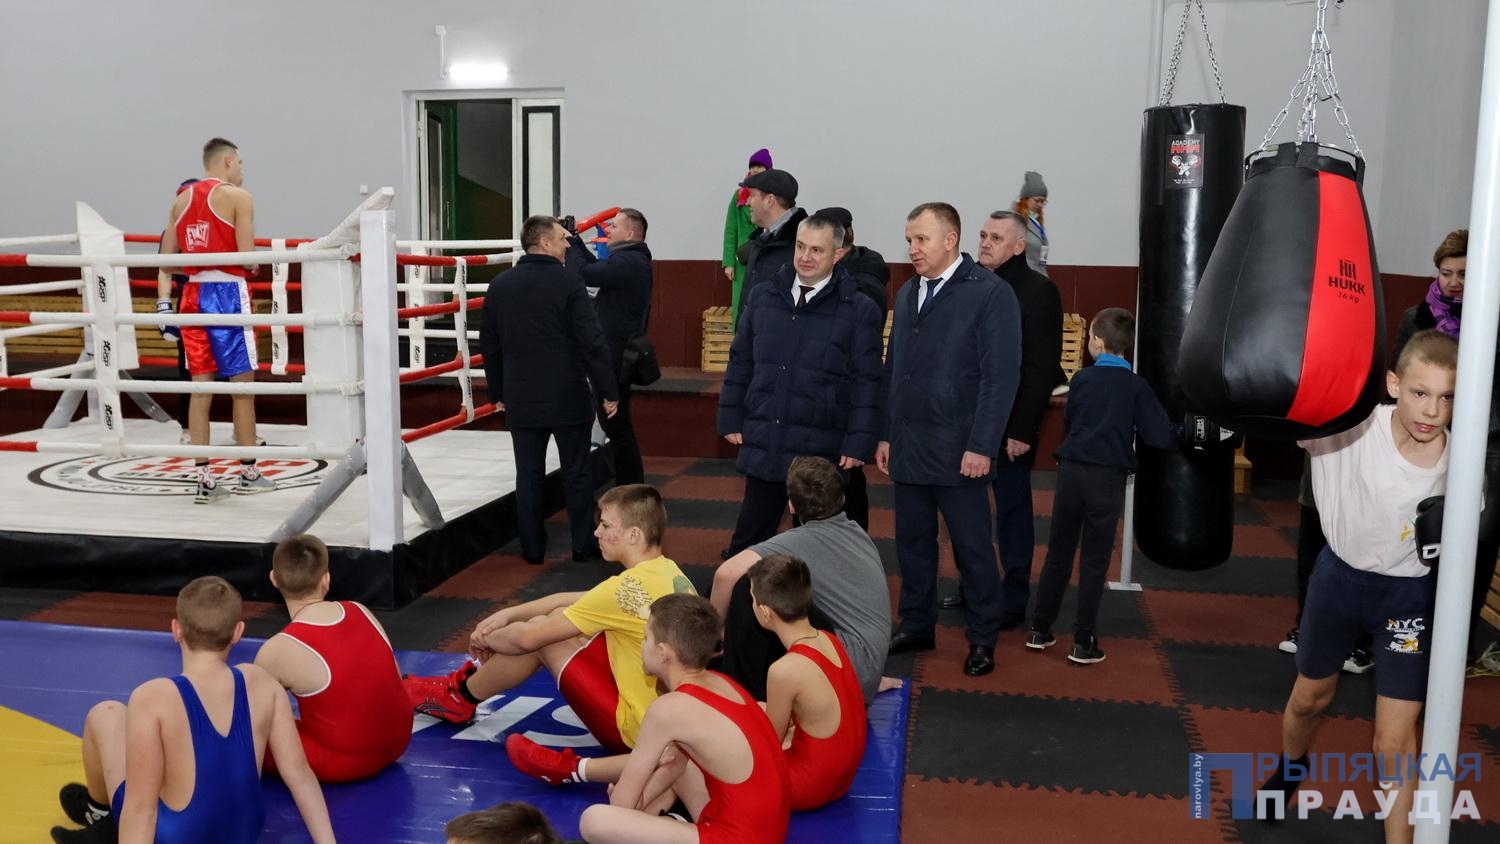 Иван Крупко посетил молодежный спортивно-развлекательный центр в Наровле